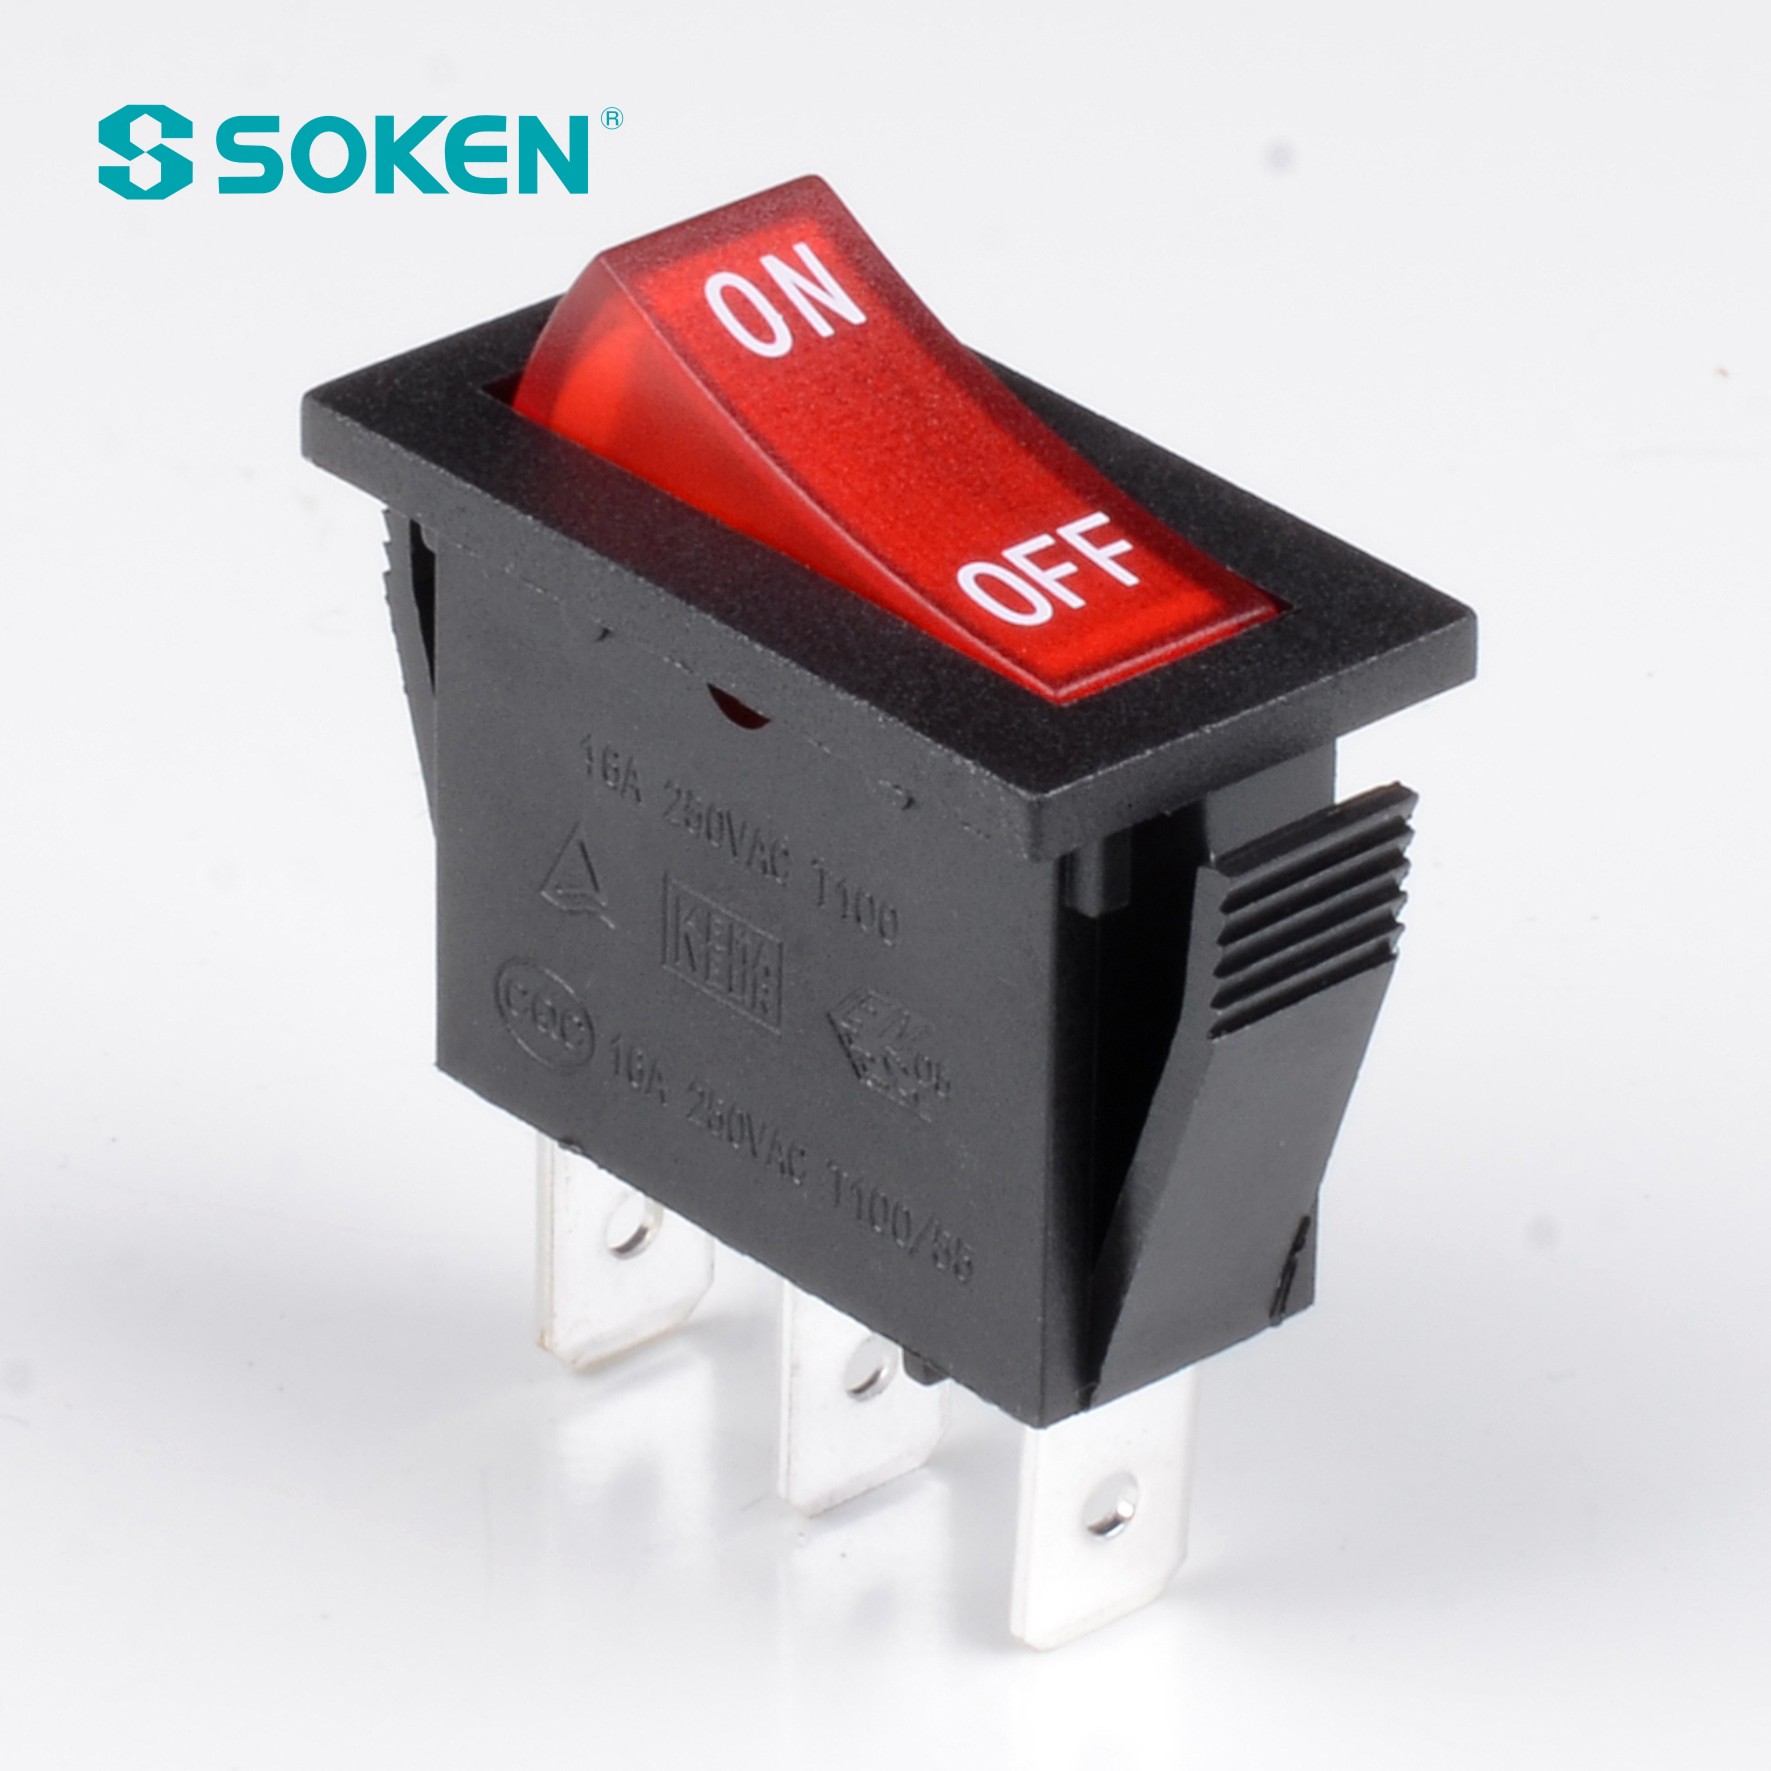 Soken Rk1-16 1X1n W/R オンオフロッカースイッチ